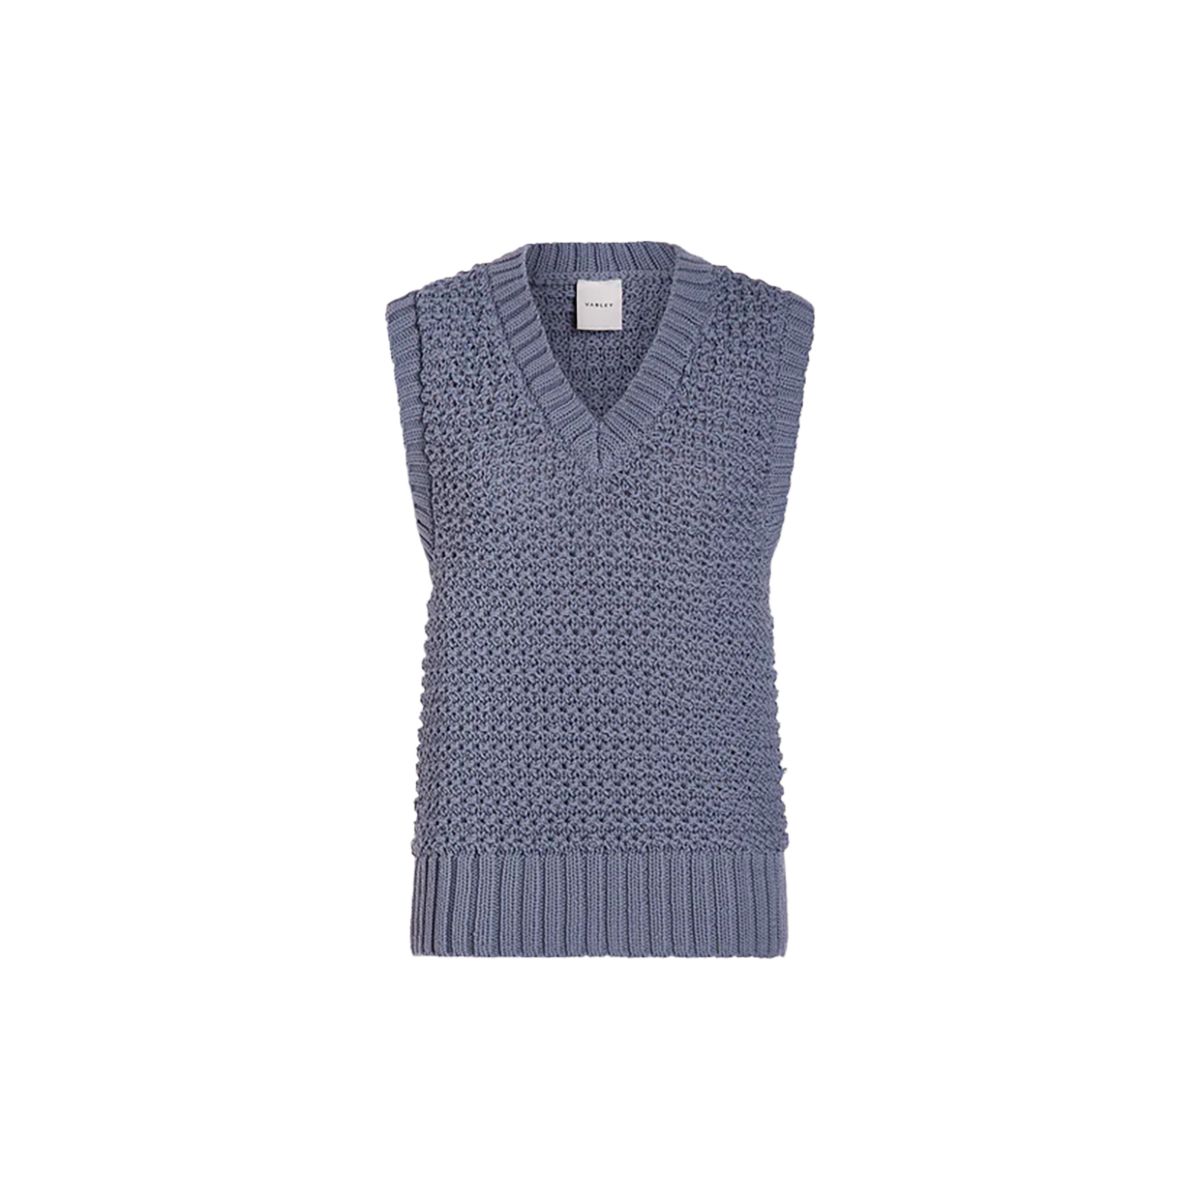 Varley Adie Knit Vest, , large image number null